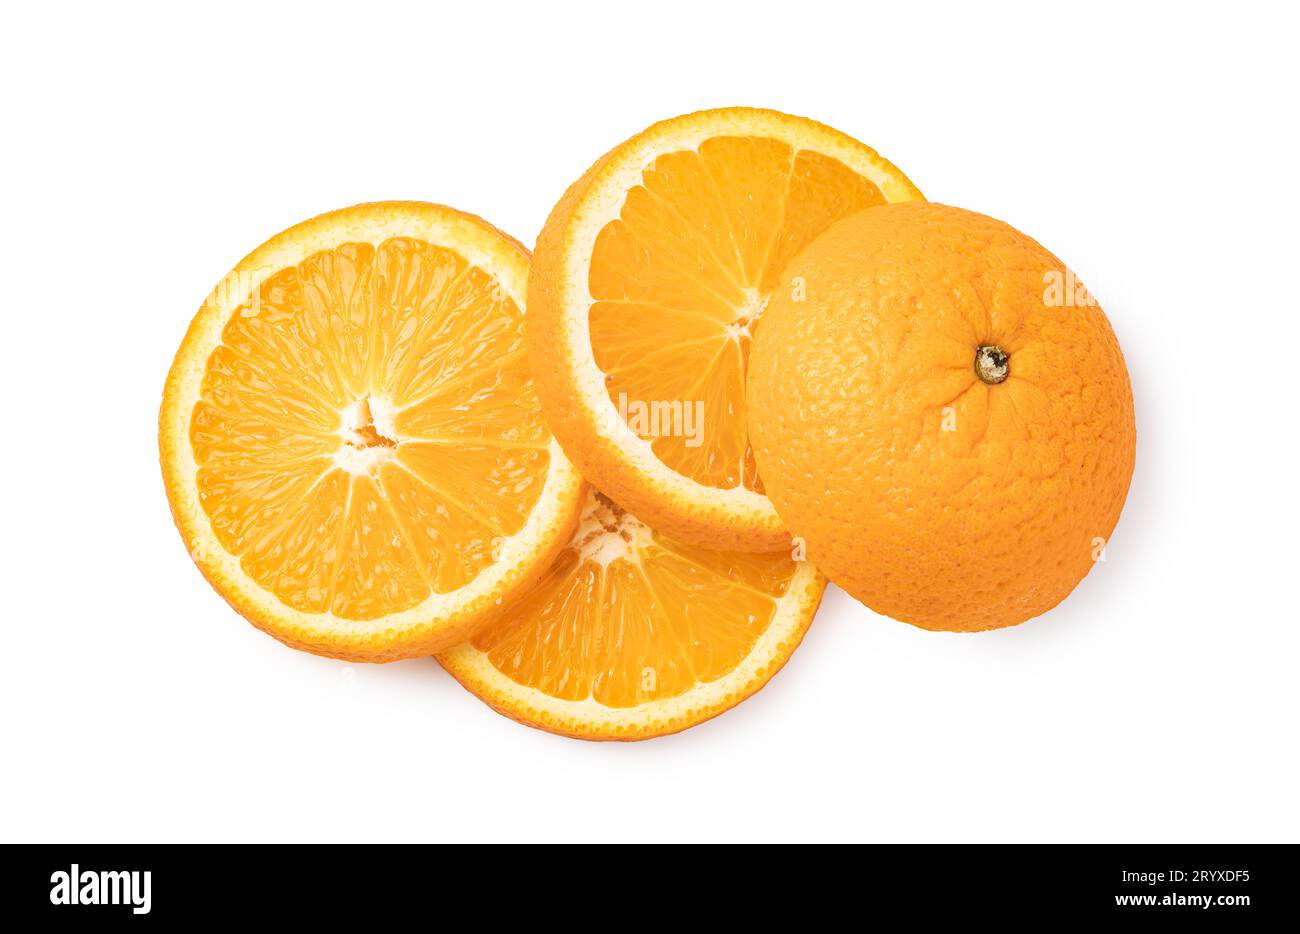 Sliced orange fruit Stock Photo